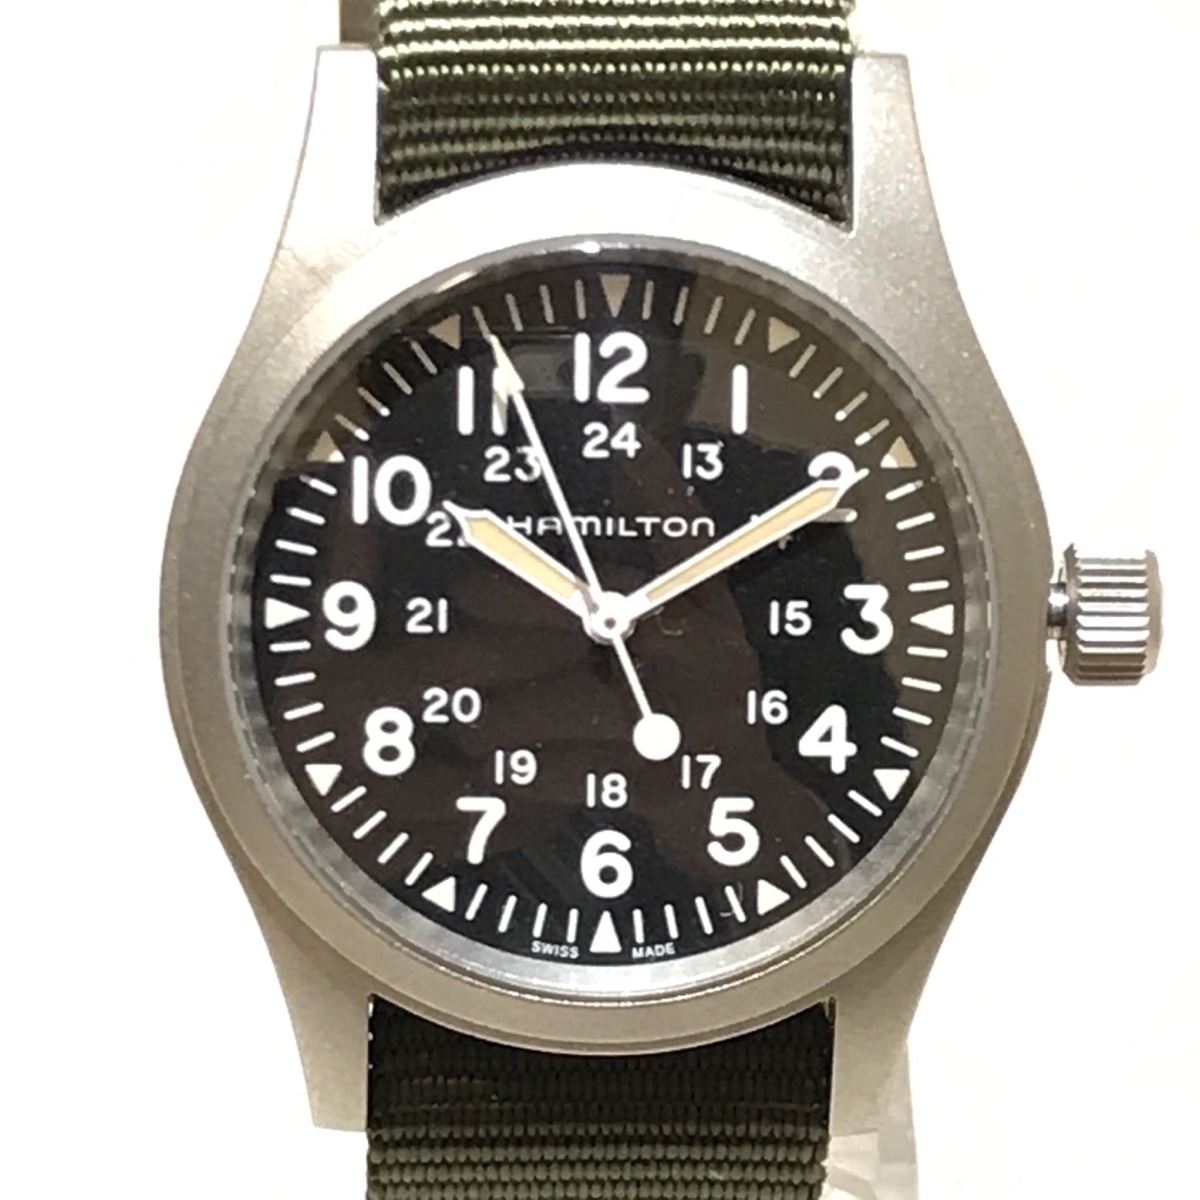 ハミルトンのH694290 SS黒文字盤 カーキフィールドメカ 手巻き時計の買取実績です。